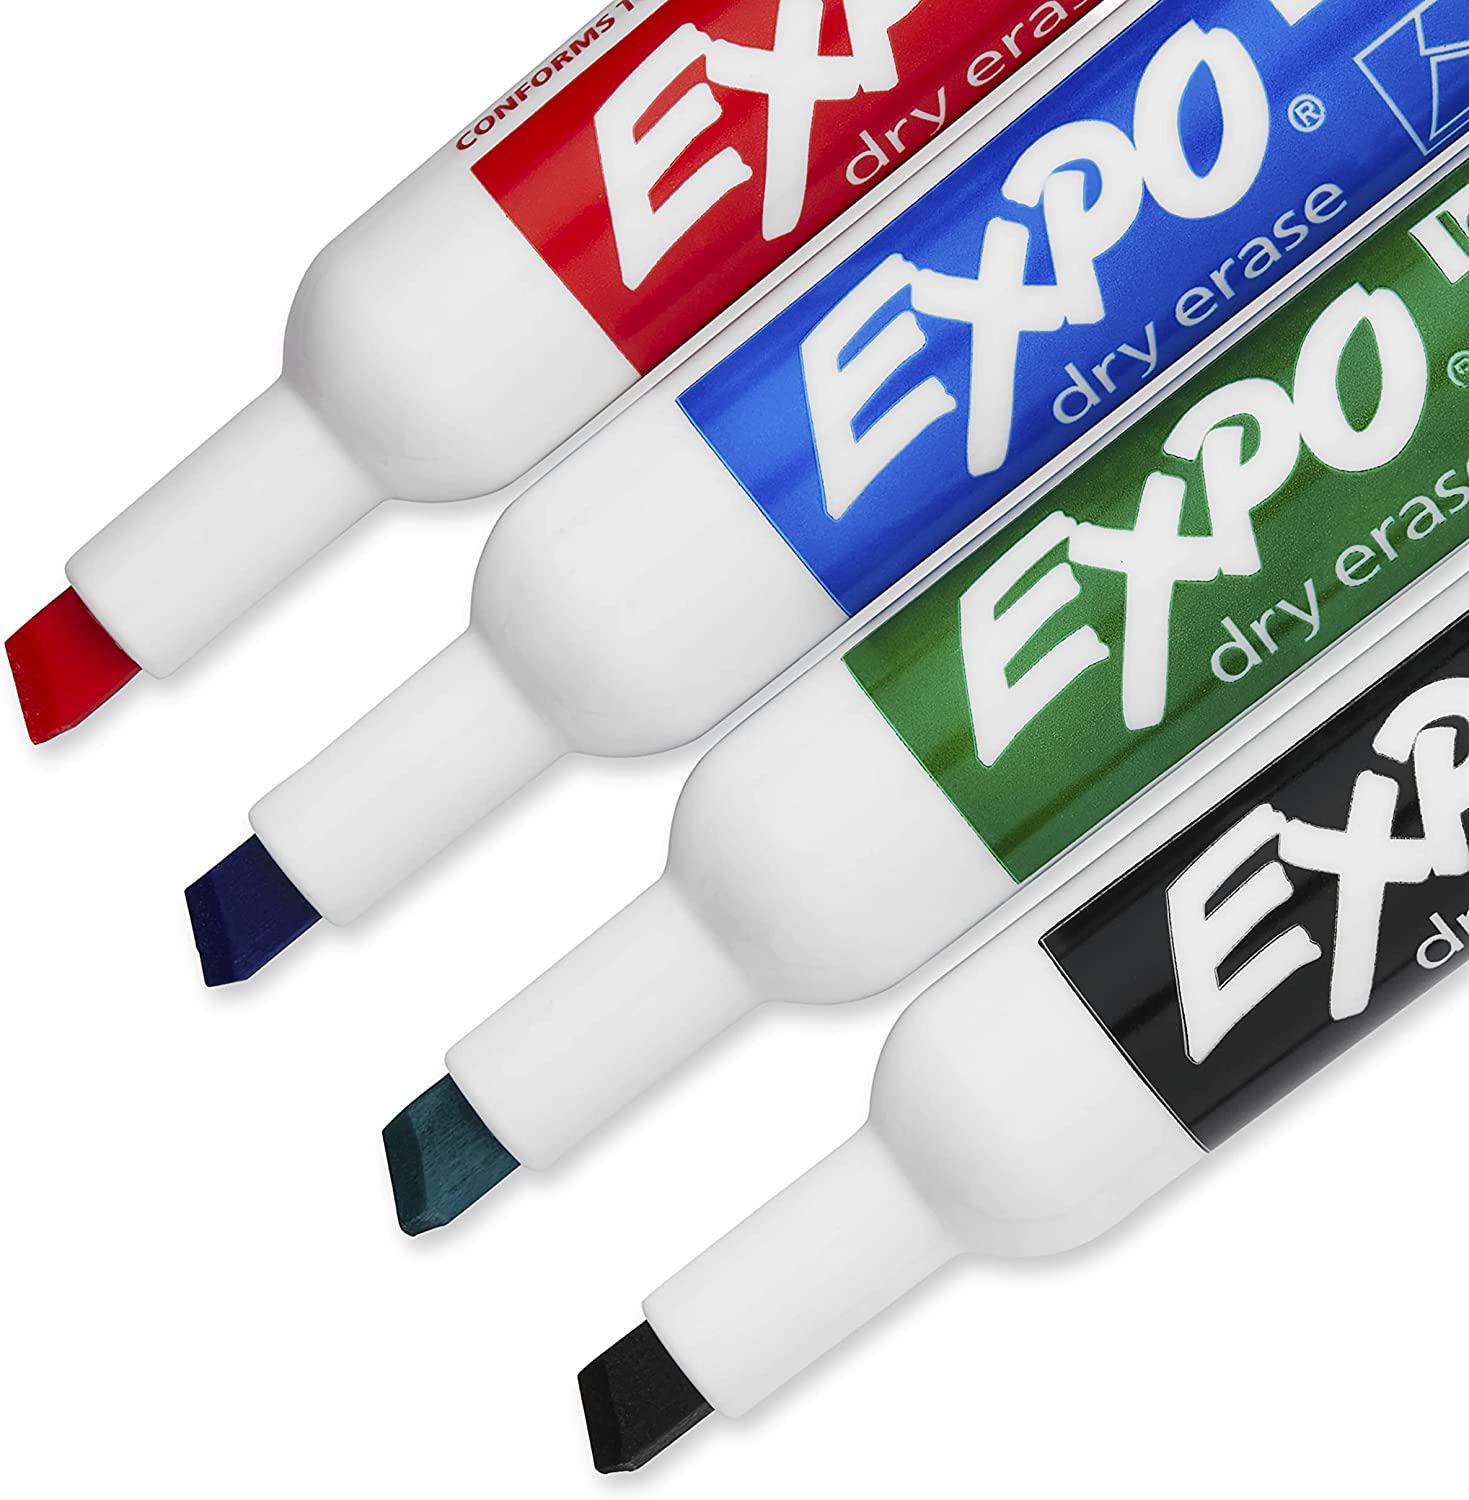 dry eraser expo